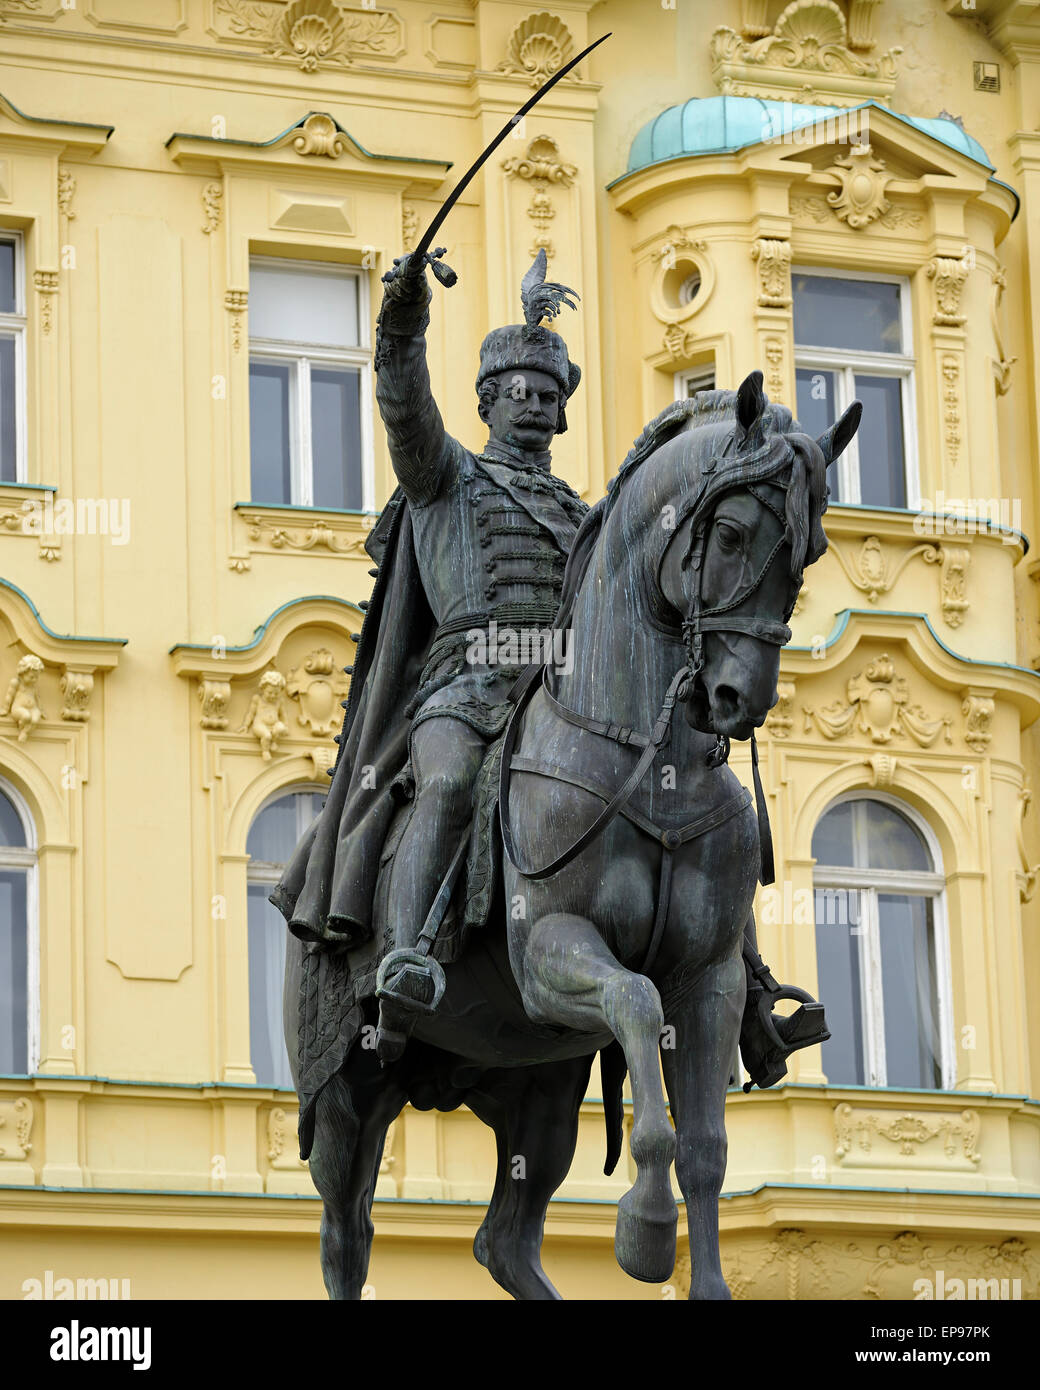 Statua di re Josip nella principale Piazza Ban Jelacic, Zagabria, Croazia. Foto Stock